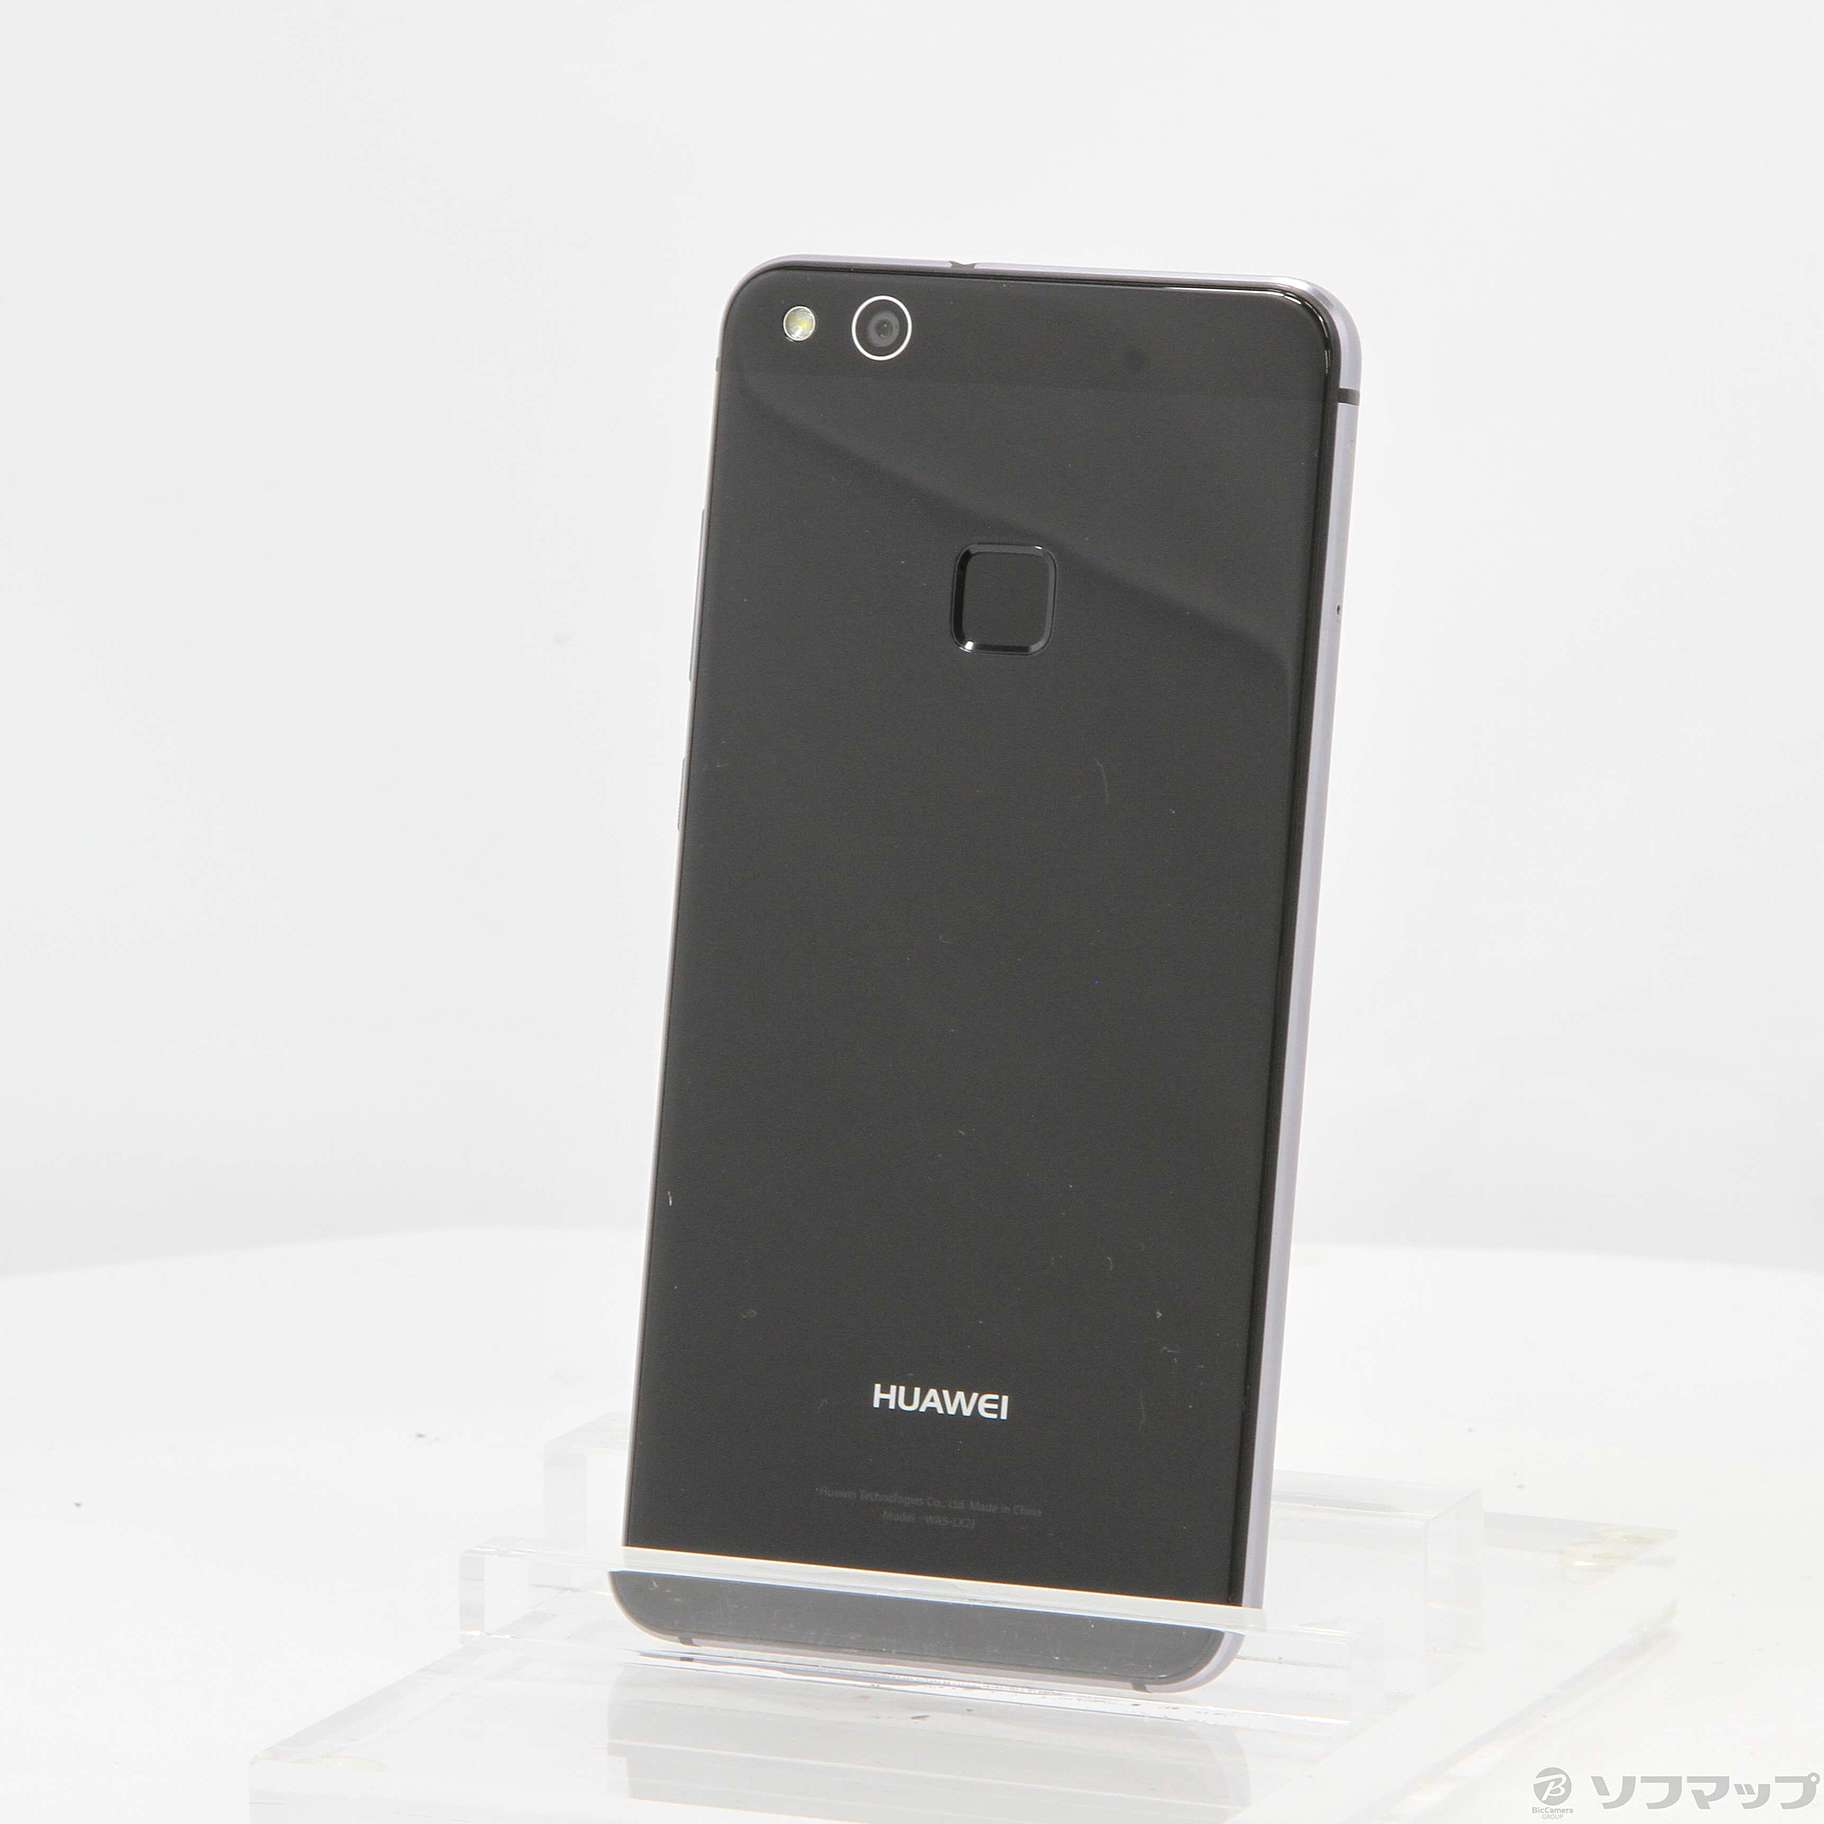 【新品未開封】Huawei P10 lite ブラック 32GB【SIMフリー】商品状態新品未開封品です